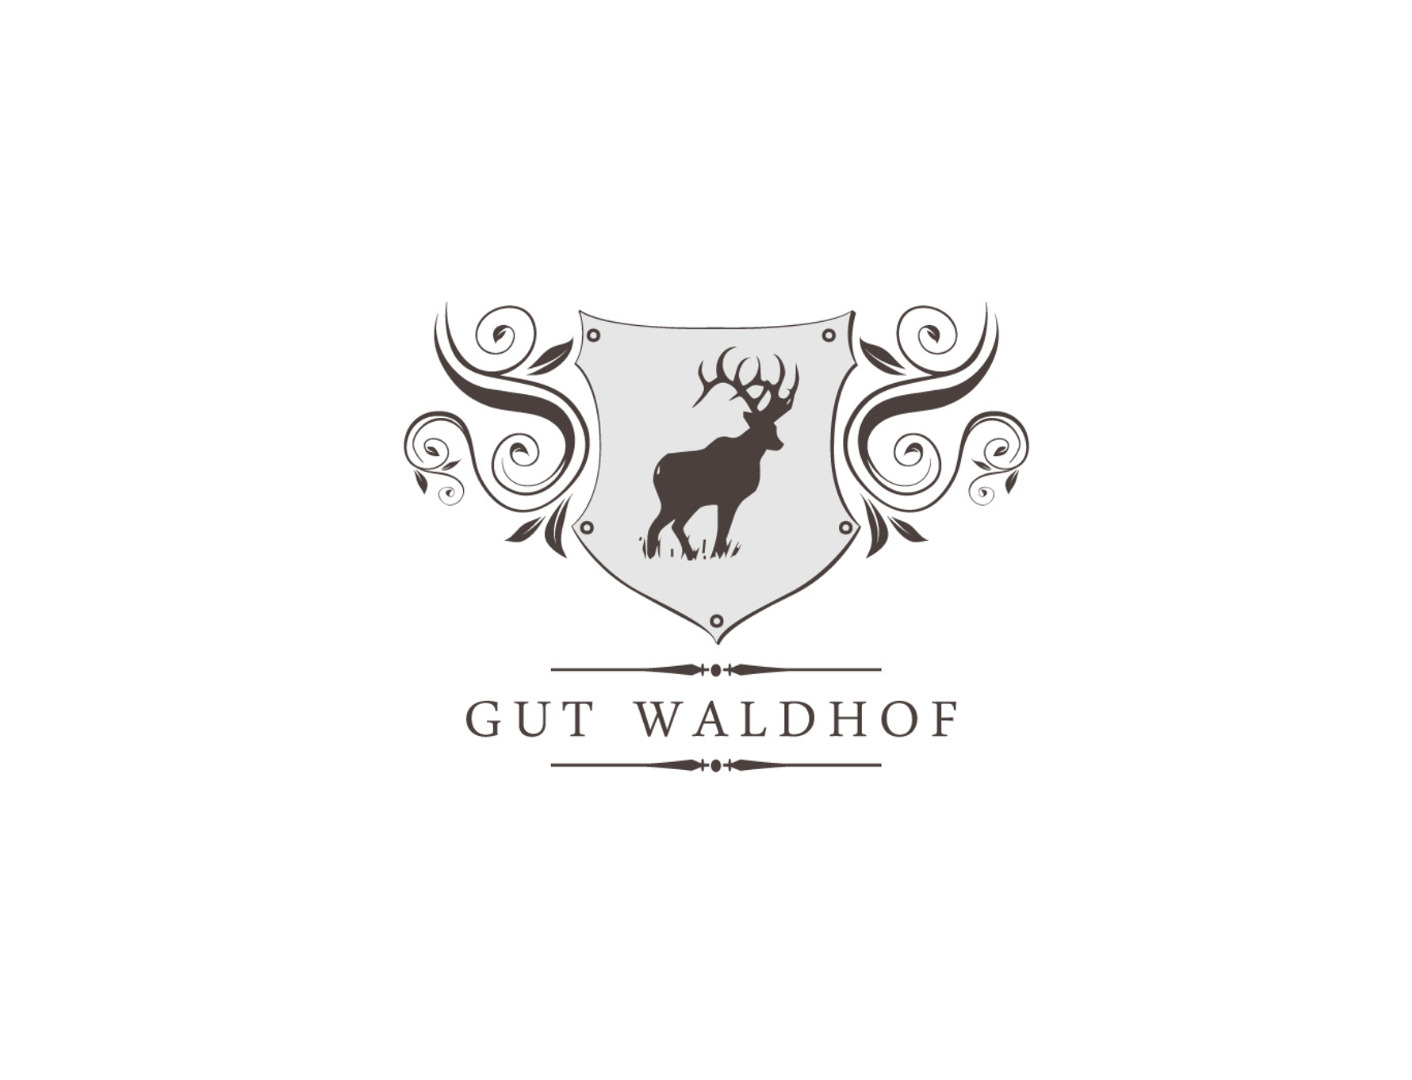 Logo Waldhof